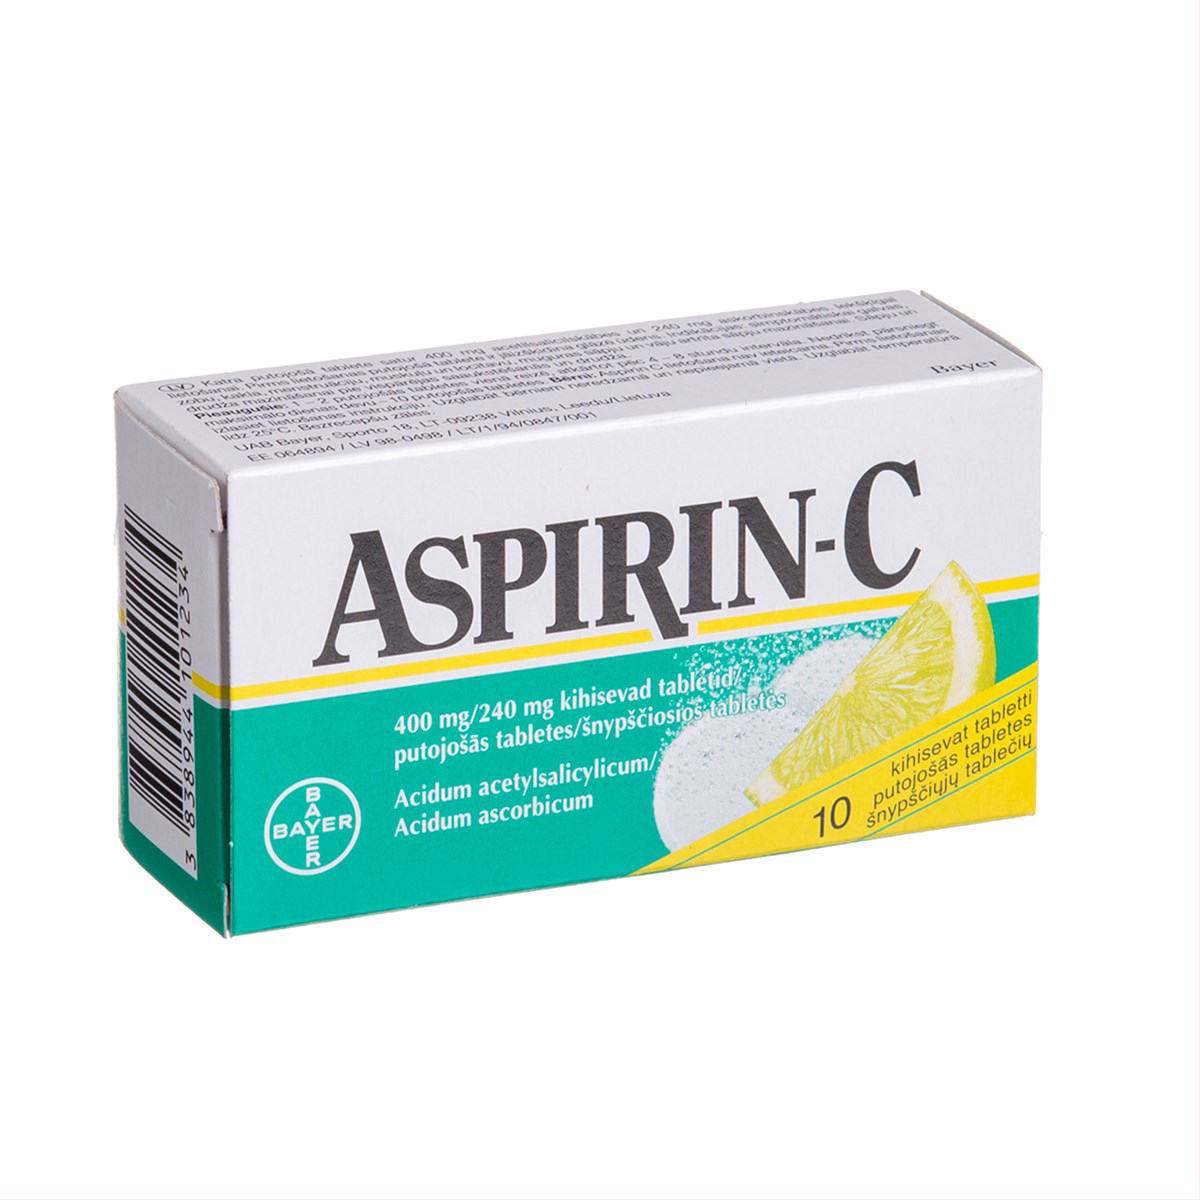 ASPIRIN-C, 400 mg/240 mg, šnypščiosios tabletės, N10